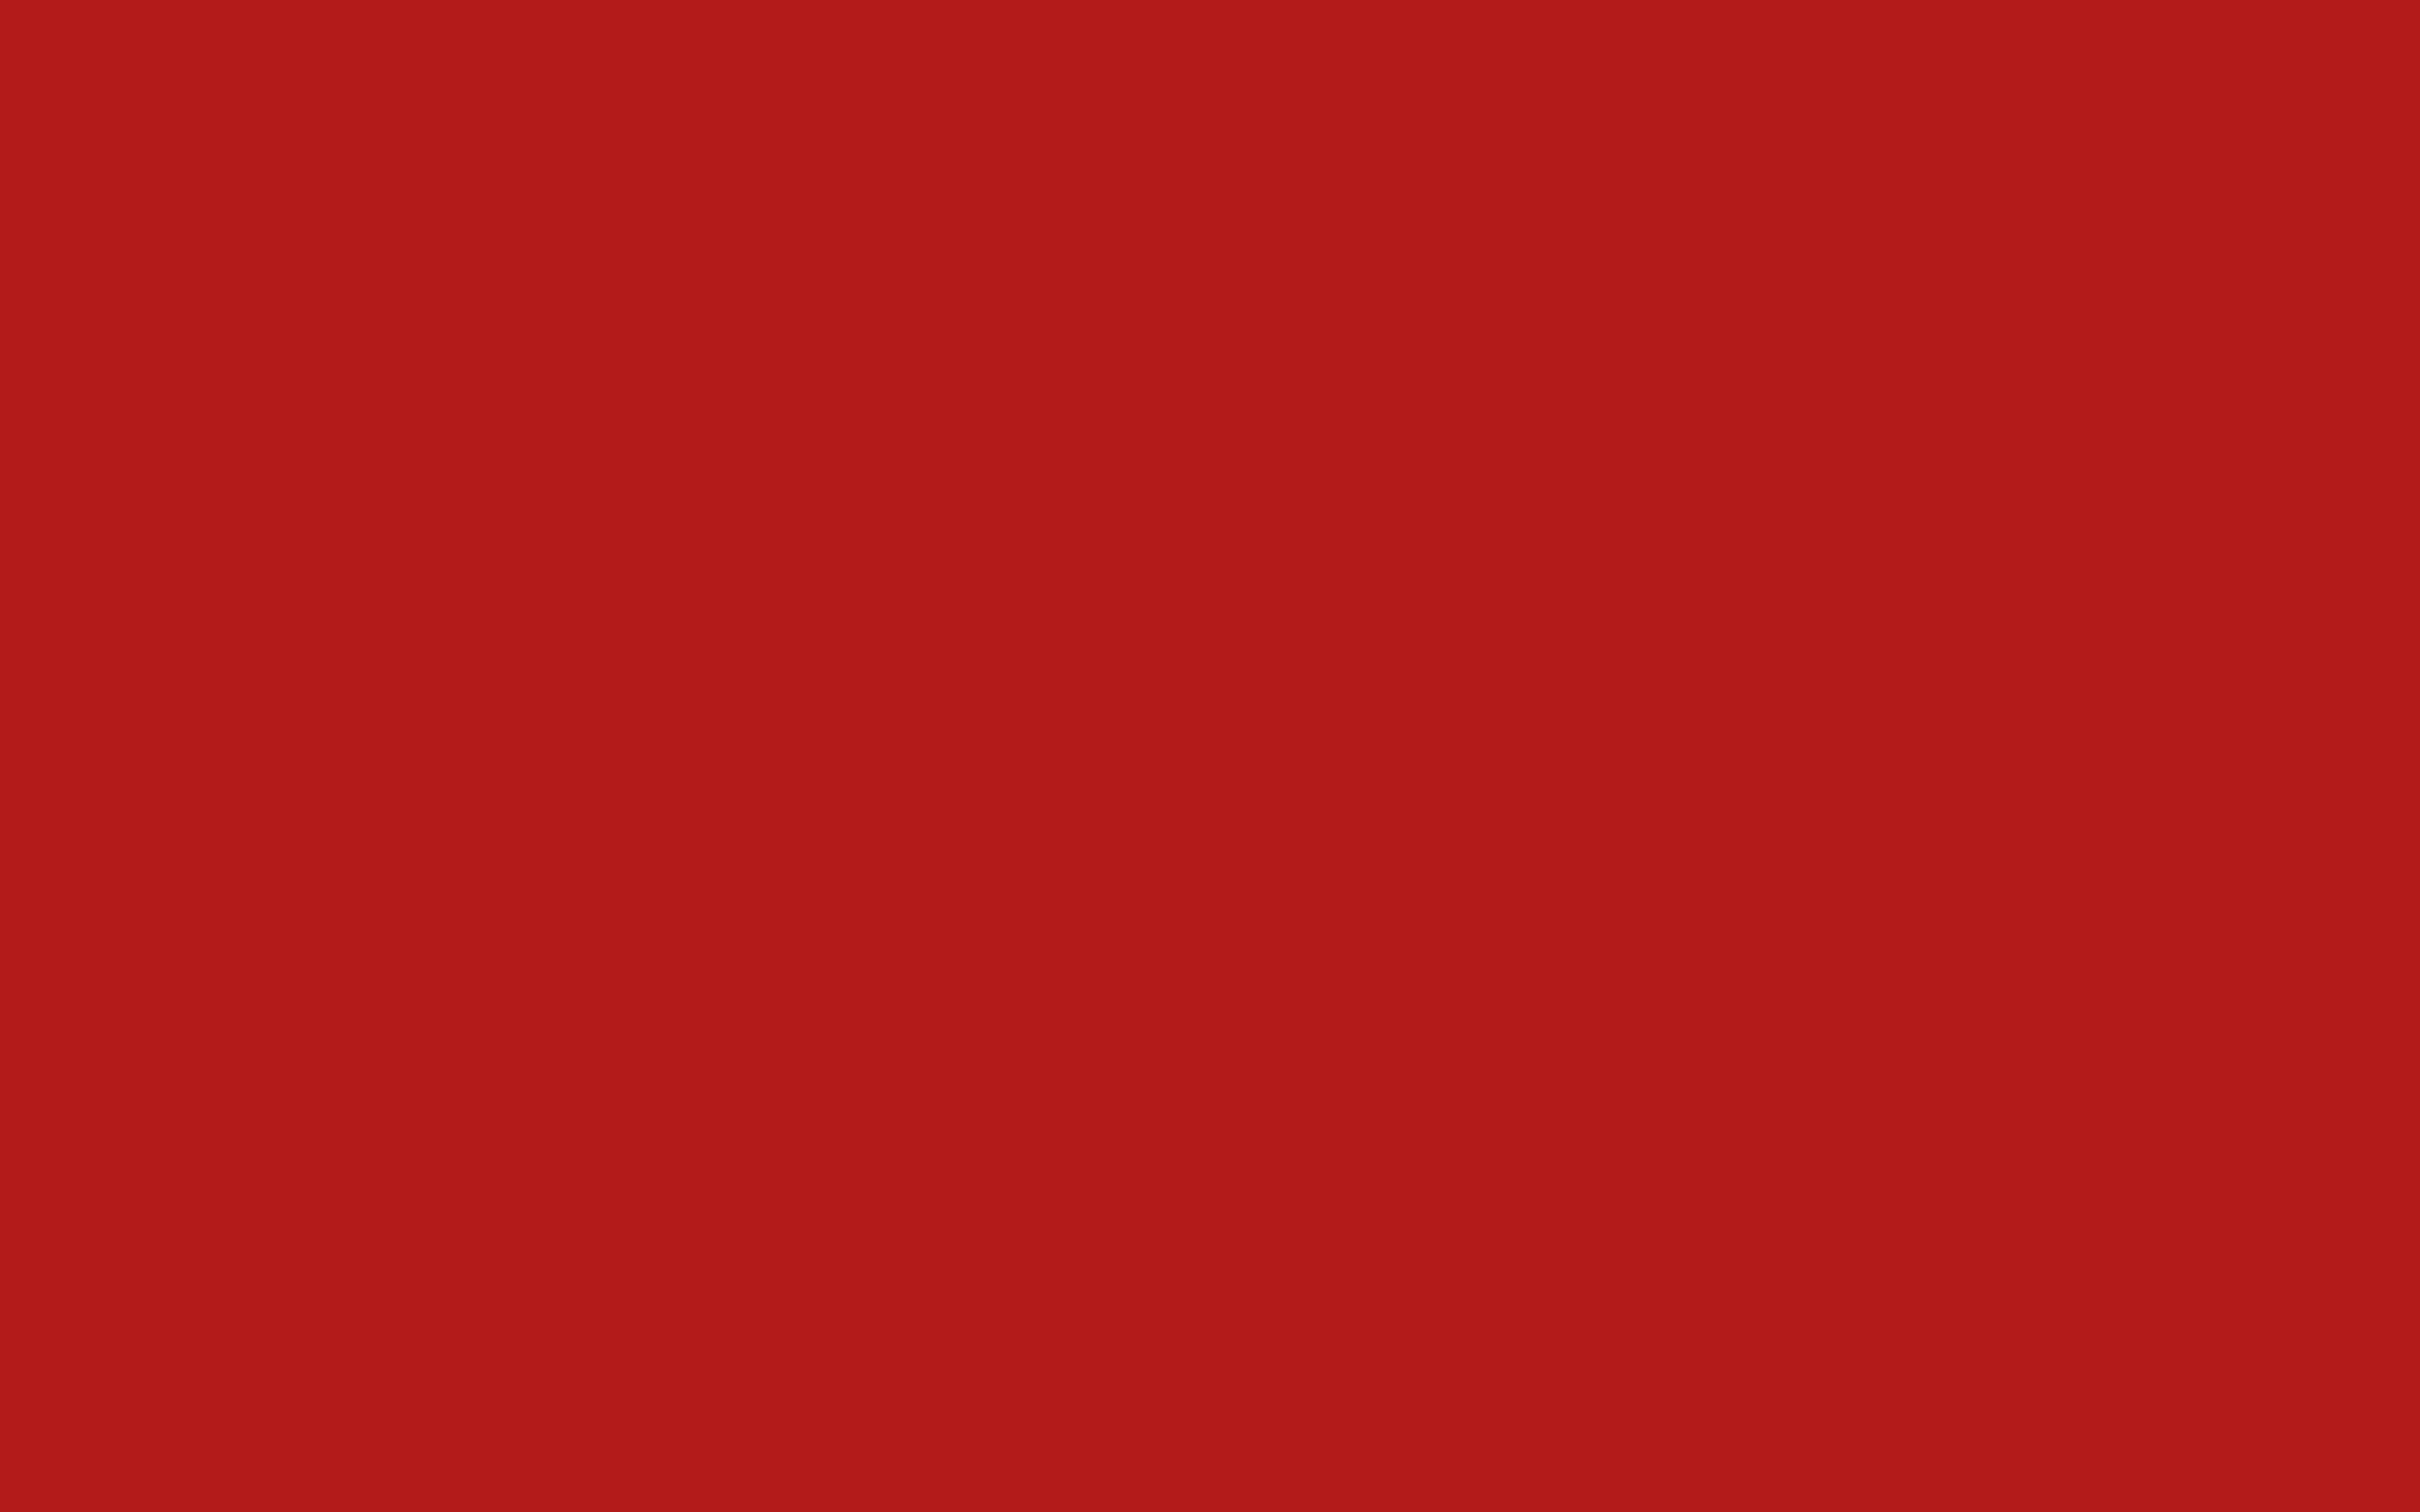 Red Background Wallpaper - KibrisPDR